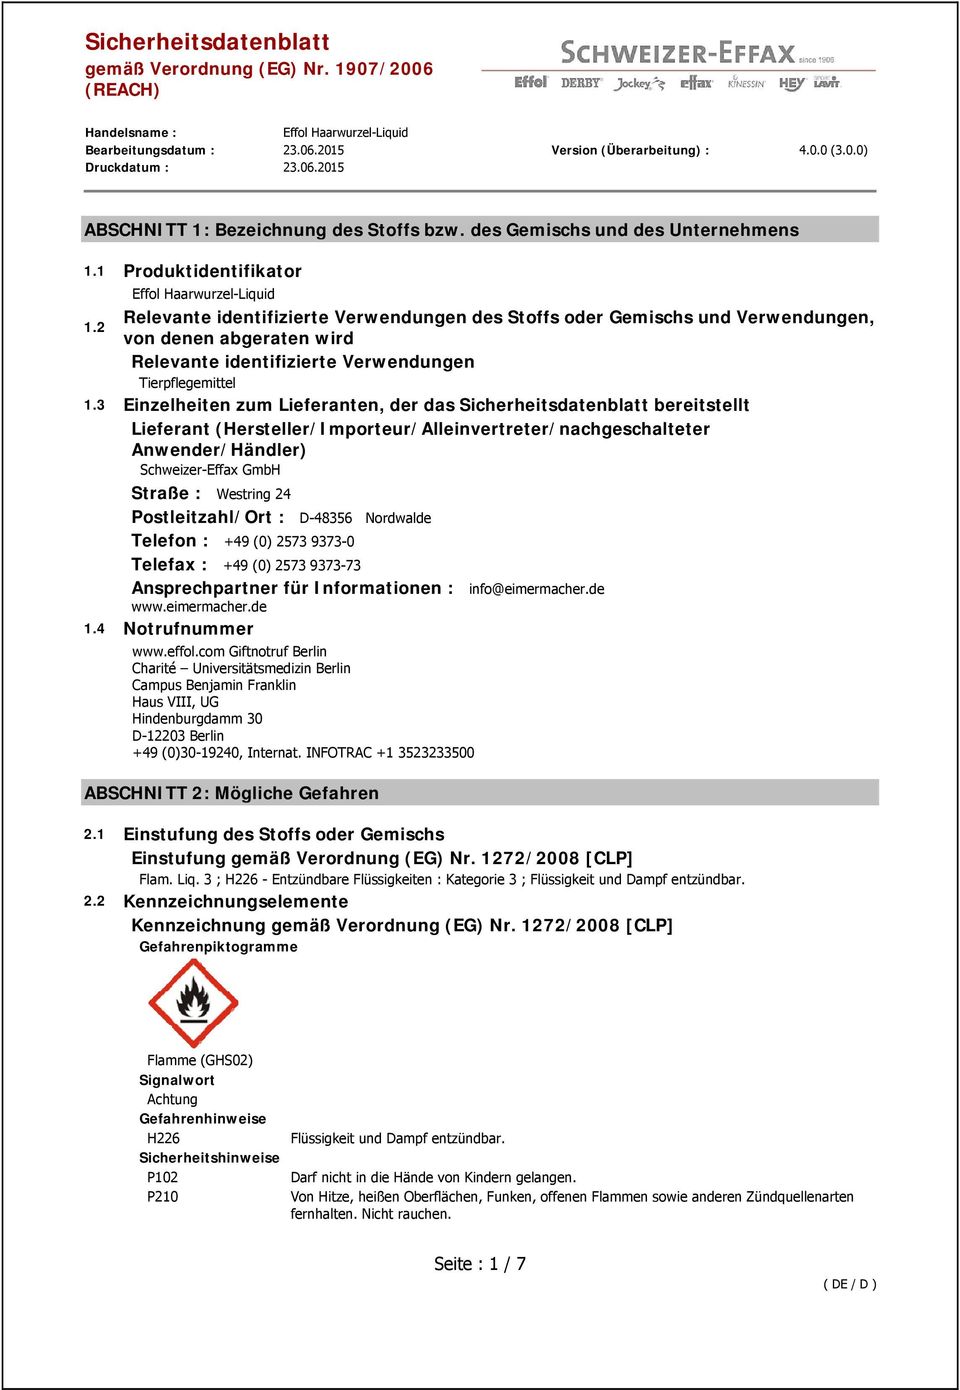 3 Einzelheiten zum Lieferanten, der das Sicherheitsdatenblatt bereitstellt Lieferant (Hersteller/Importeur/Alleinvertreter/nachgeschalteter Anwender/Händler) Schweizer-Effax GmbH Straße : Westring 24